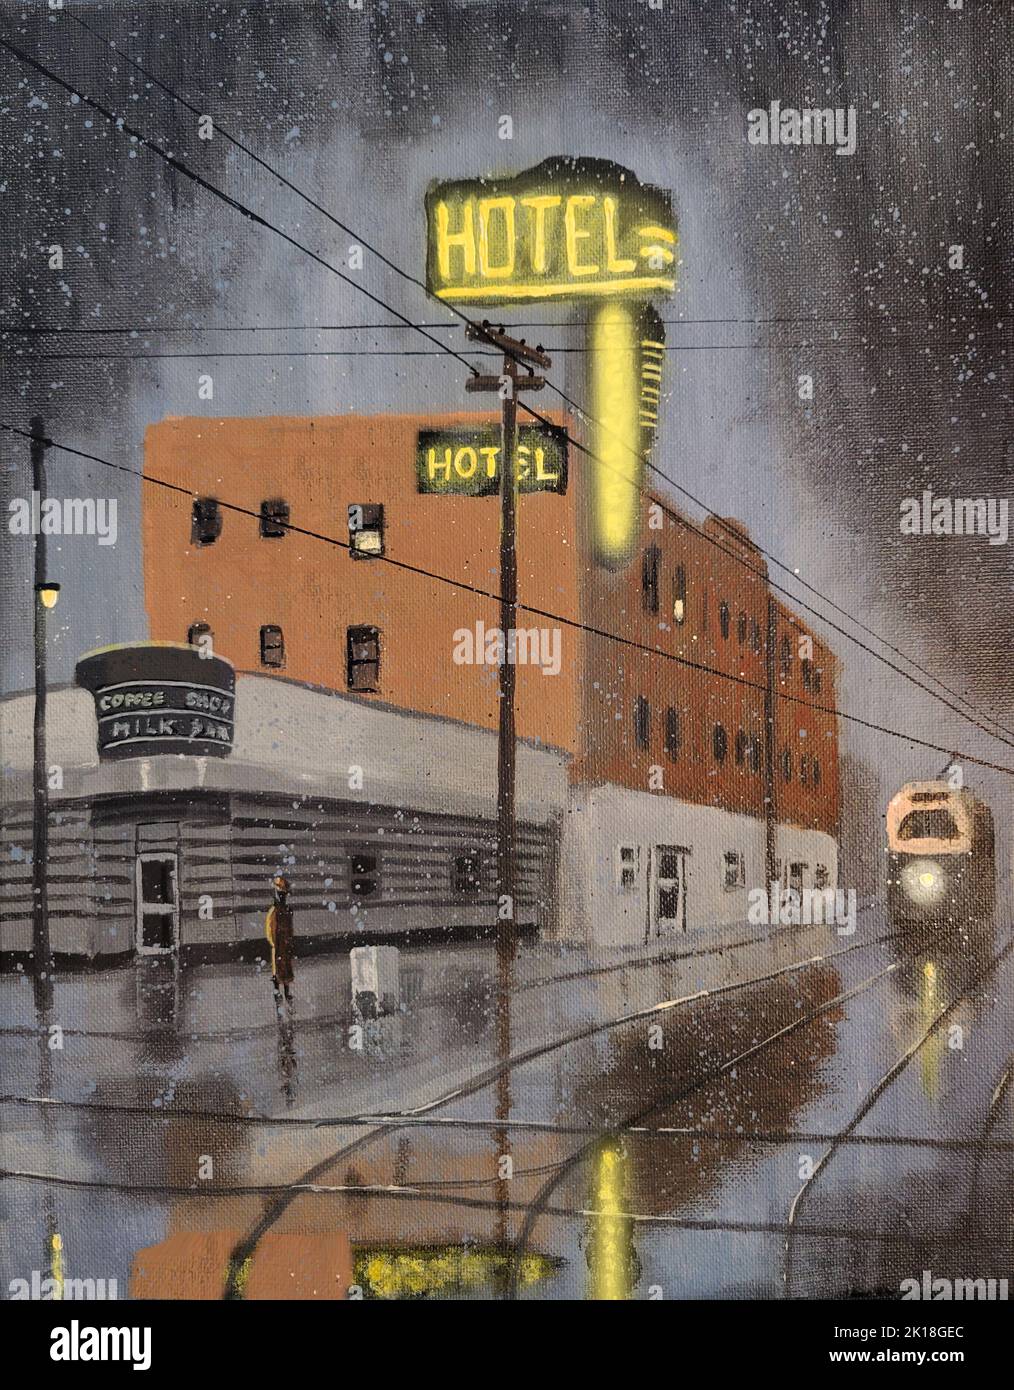 Moody, Film Noir inspirierte Retro-Szene eines Hotels an einer Straßenecke an einer regnerischen Nacht. Stockfoto